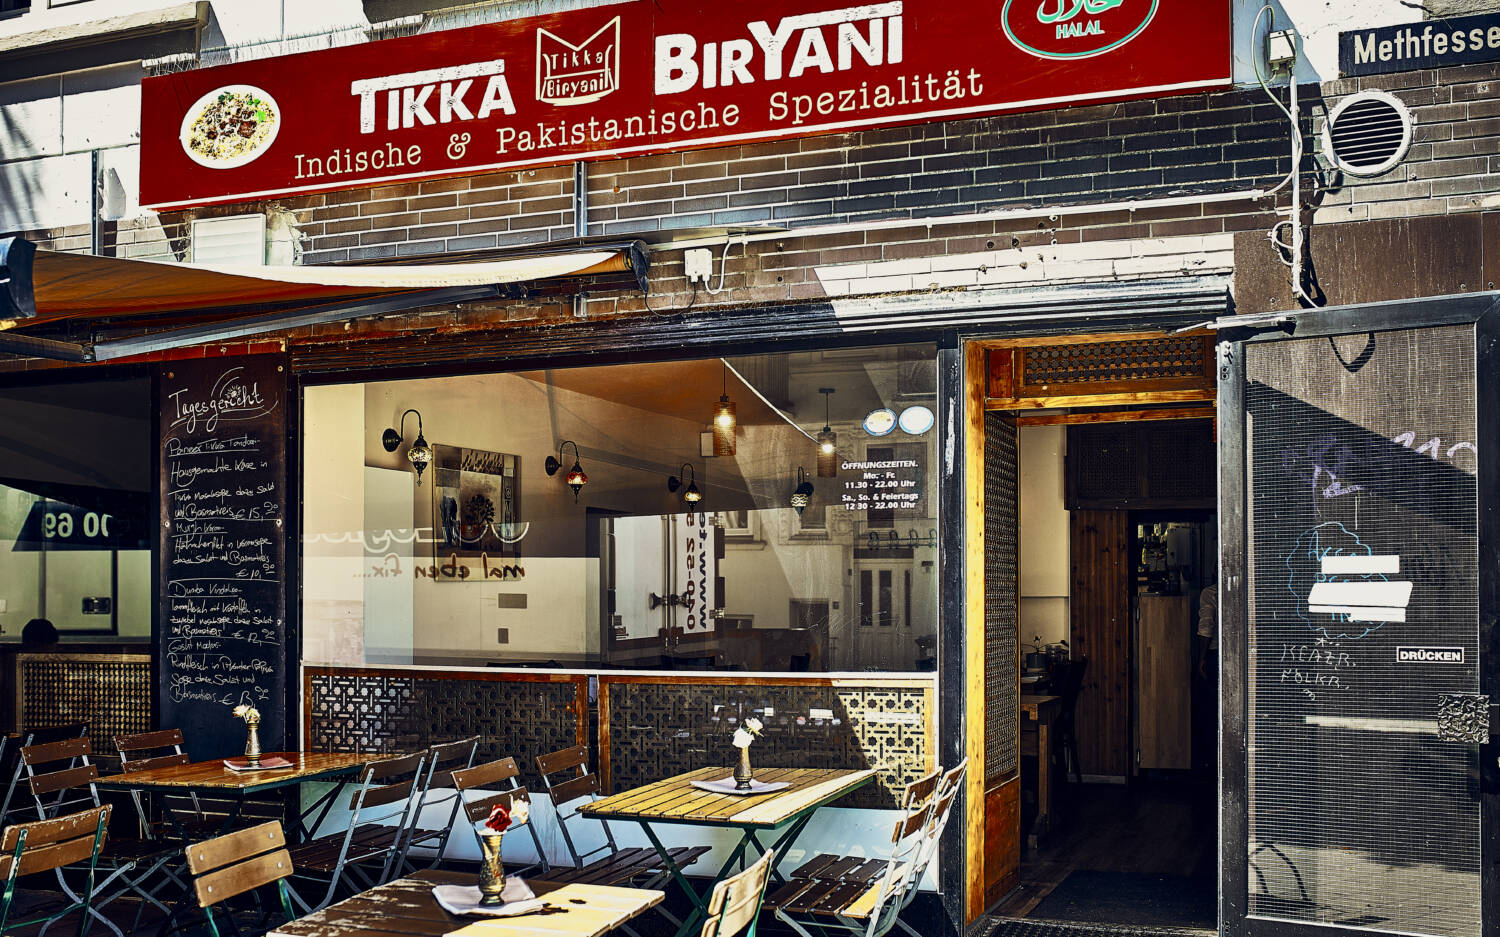 Das Tikka Biryani in Eimsbüttel serviert indische & pakistanische Spezialitäten / ©Marc Sill